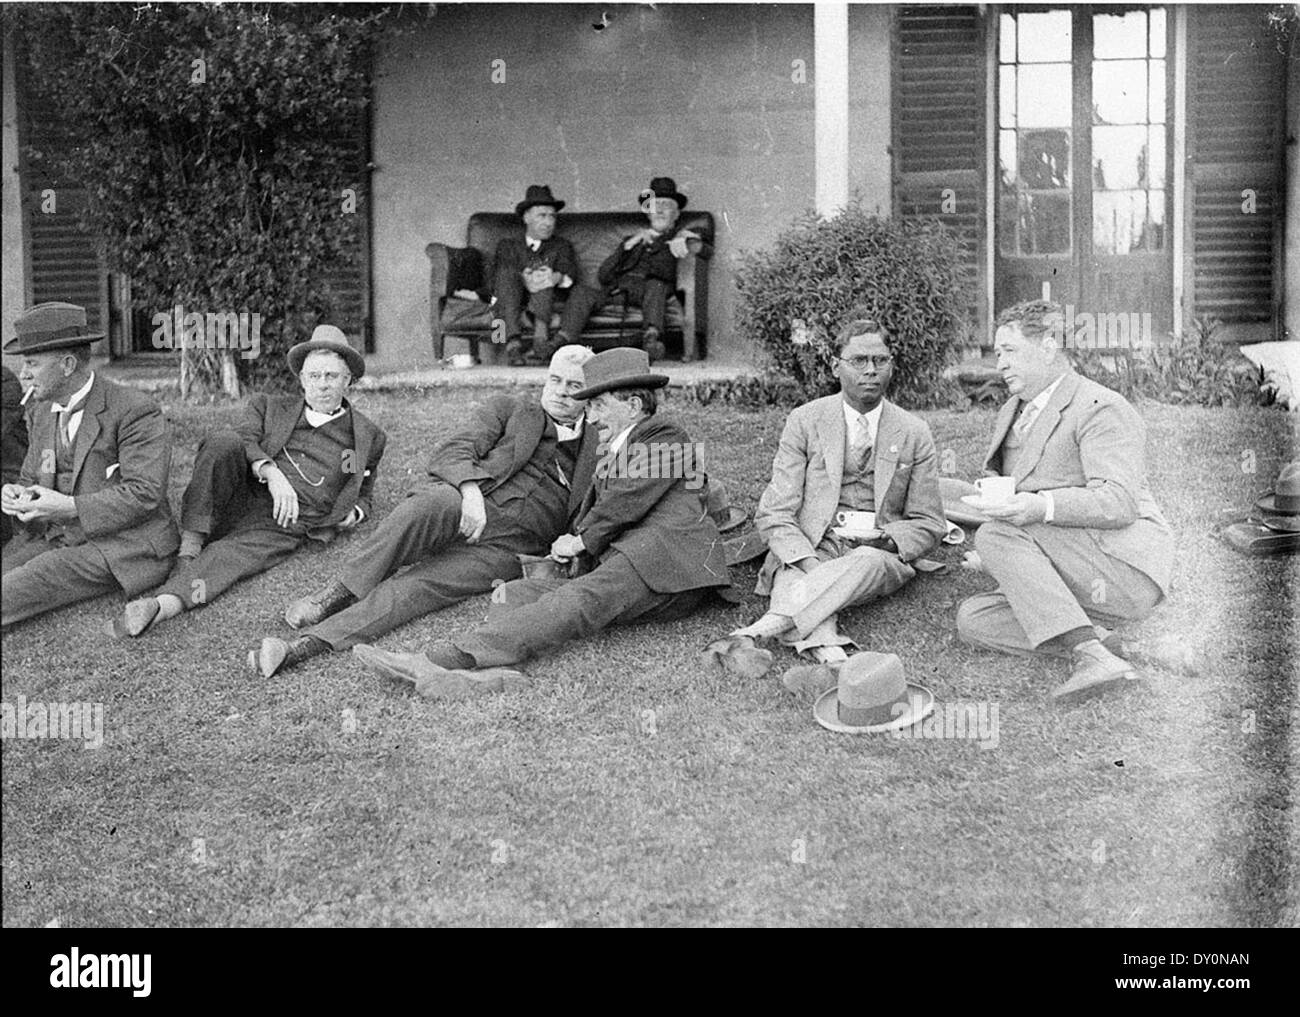 Politiker, räkelt sich auf dem Rasen an Canberra [d.h. Lanyon House], 1927, von Sam Hood Stockfoto